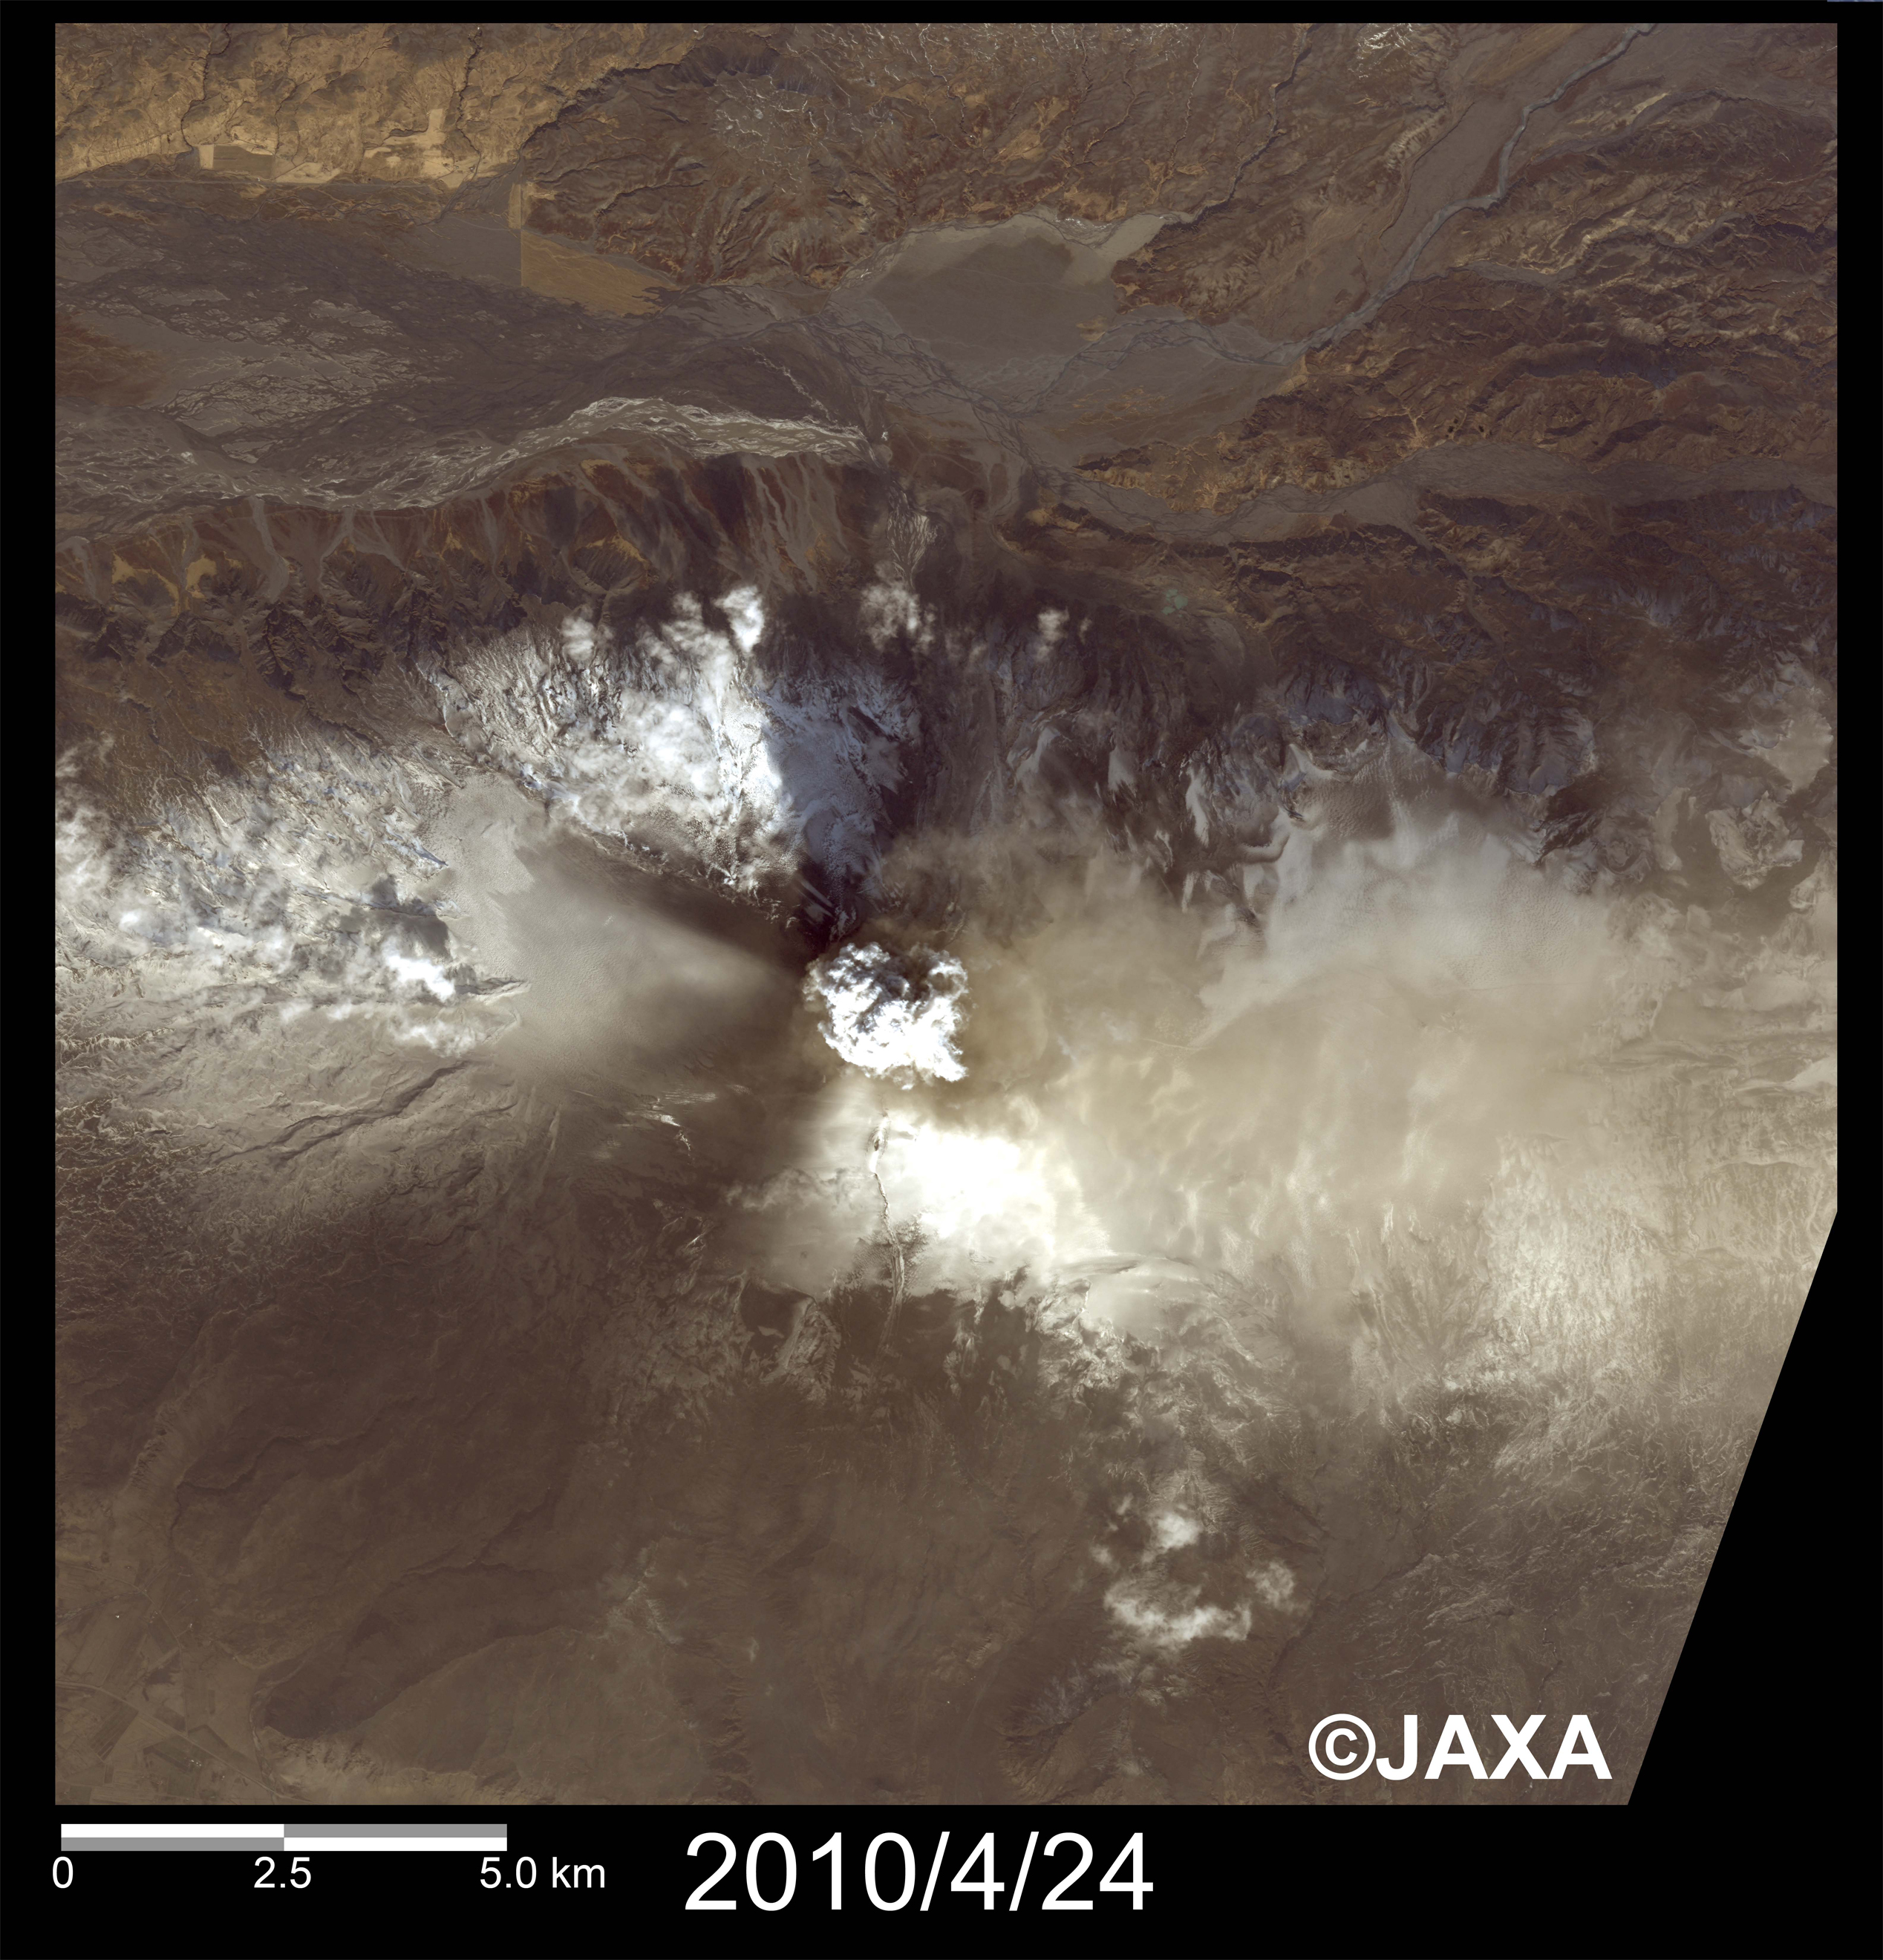 図2: エイヤフィヤトラヨークトル氷河の火山火口付近の拡大画像(それぞれ約20km四方) 2010年4月24日観測